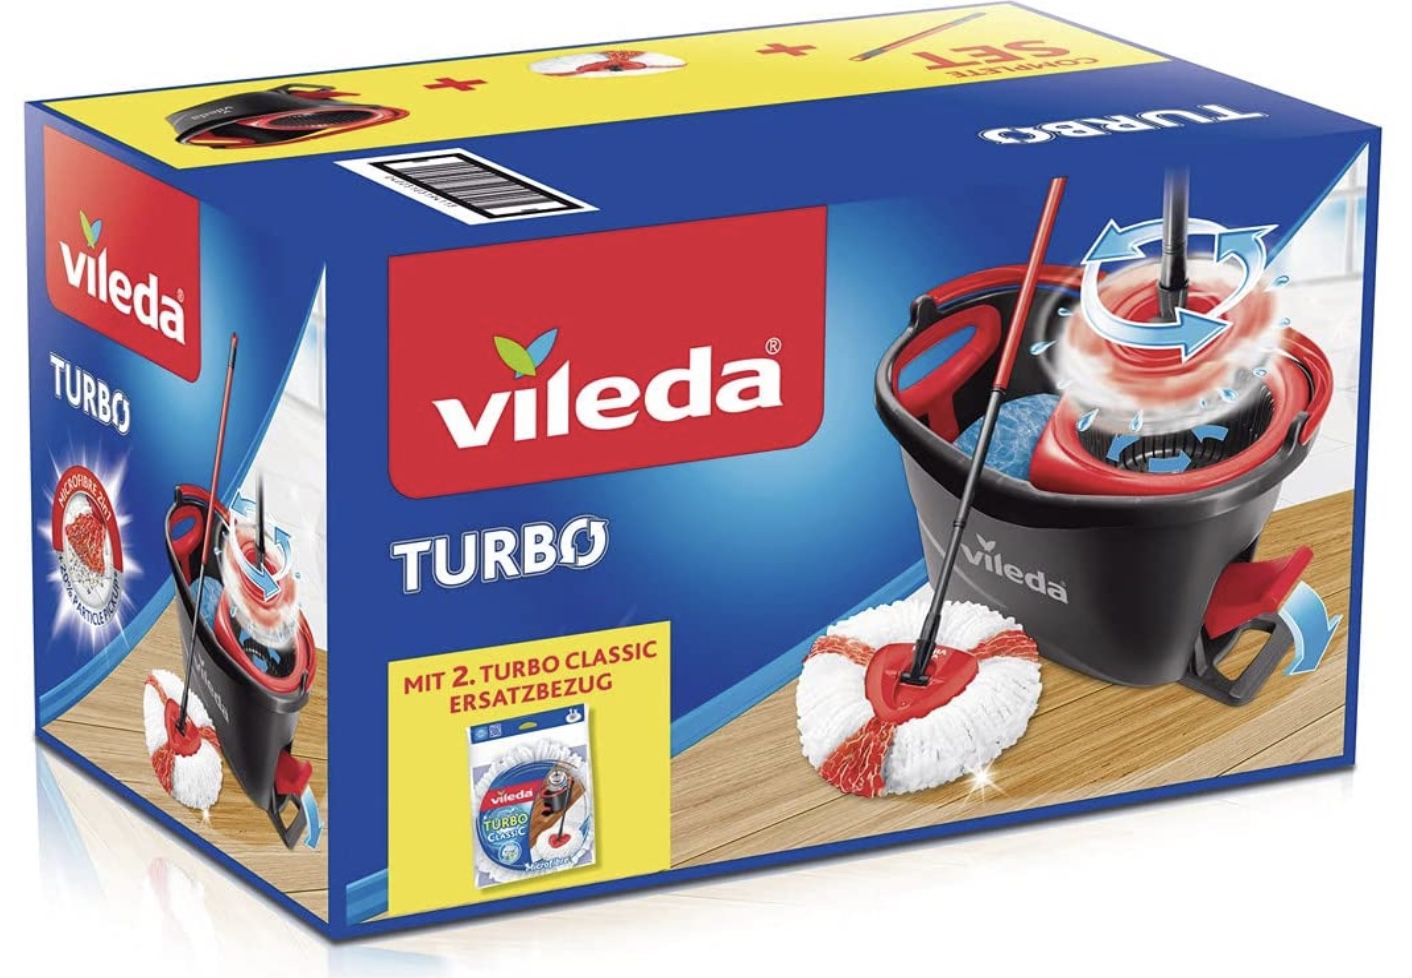 Vileda Turbo Komplett Set   Wischmop und Eimer sowie extra Classic Ersatzkopf ab 29,99€ (statt 40€)